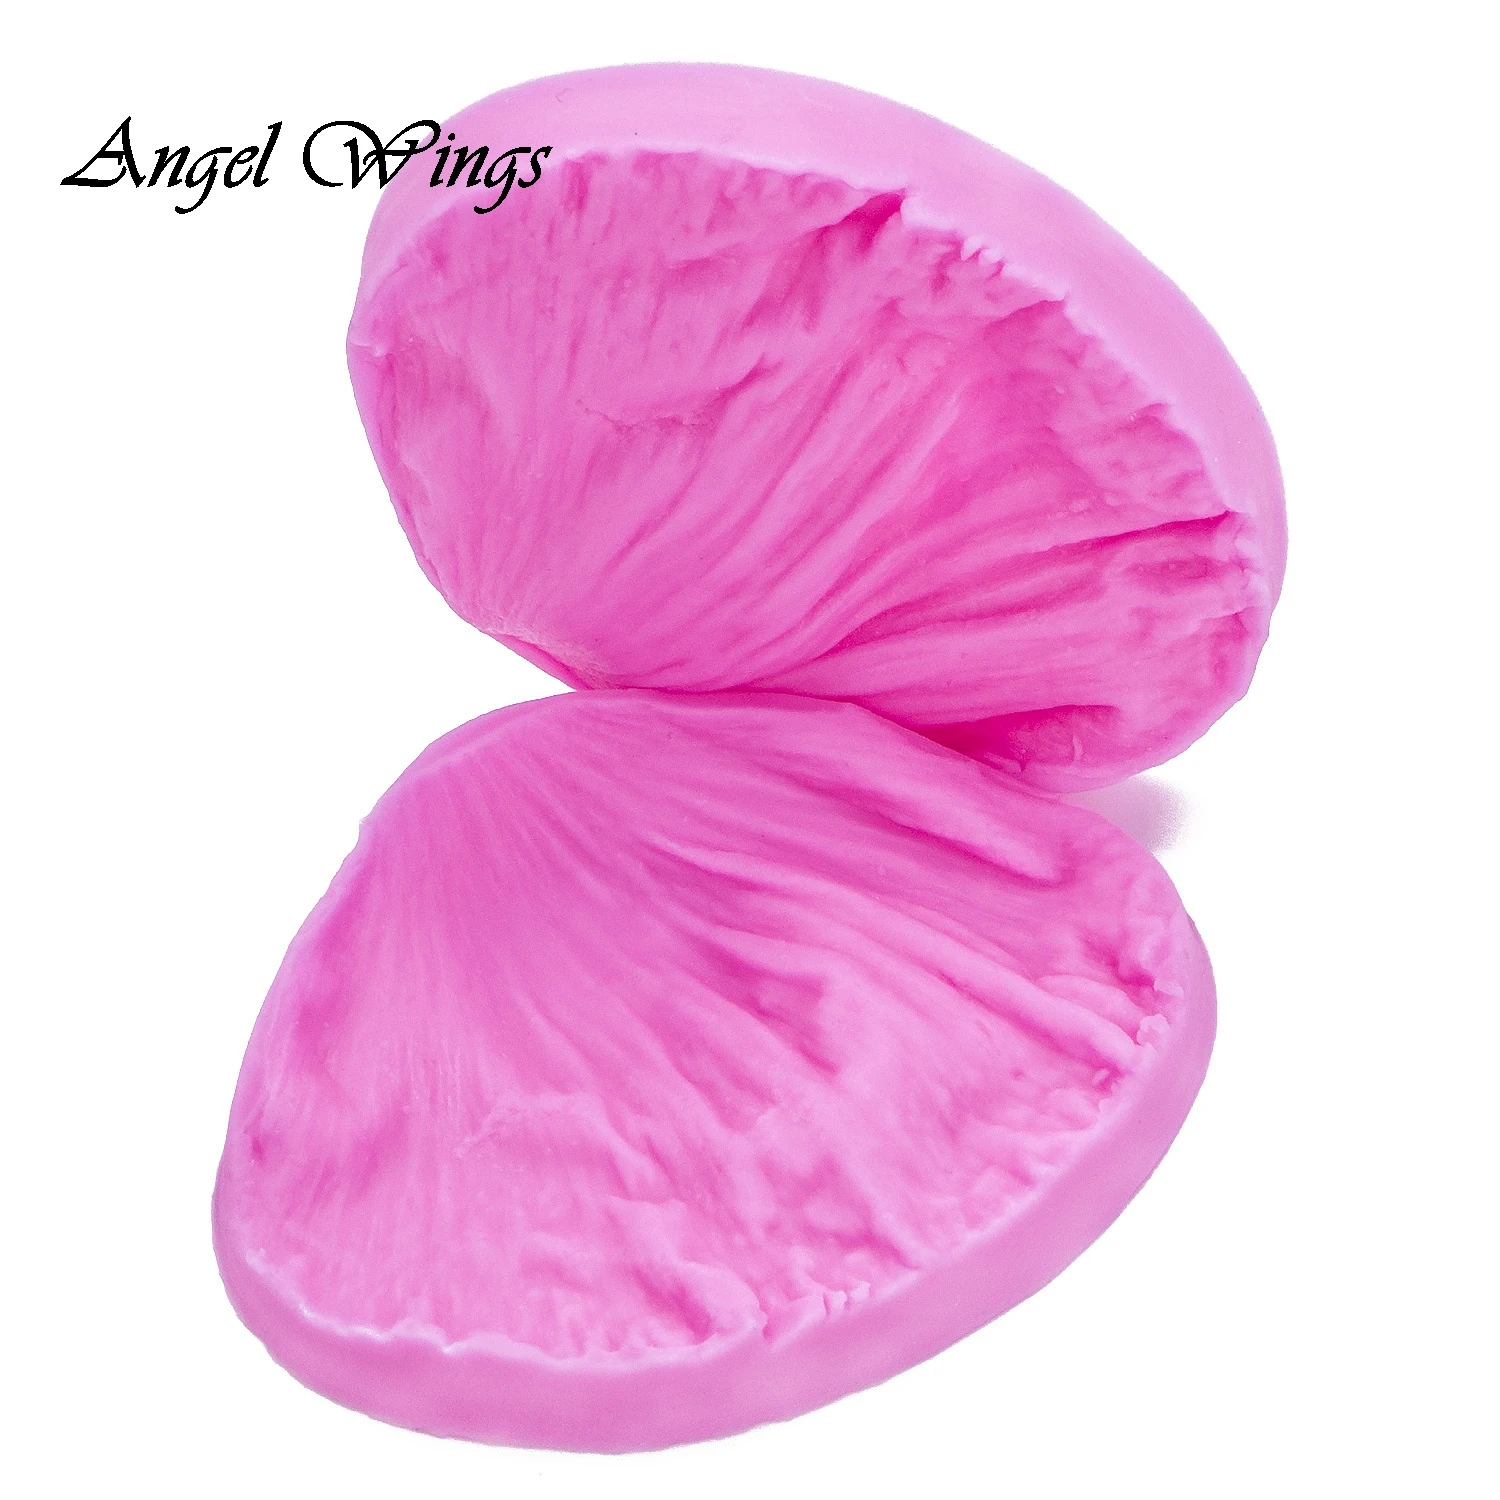 3D Пион цветок лепестки тисненые силиконовые формы рельеф инструменты для украшения тортов из мастики шоколад Gumpaste глиняные формы для конфет FT-1028